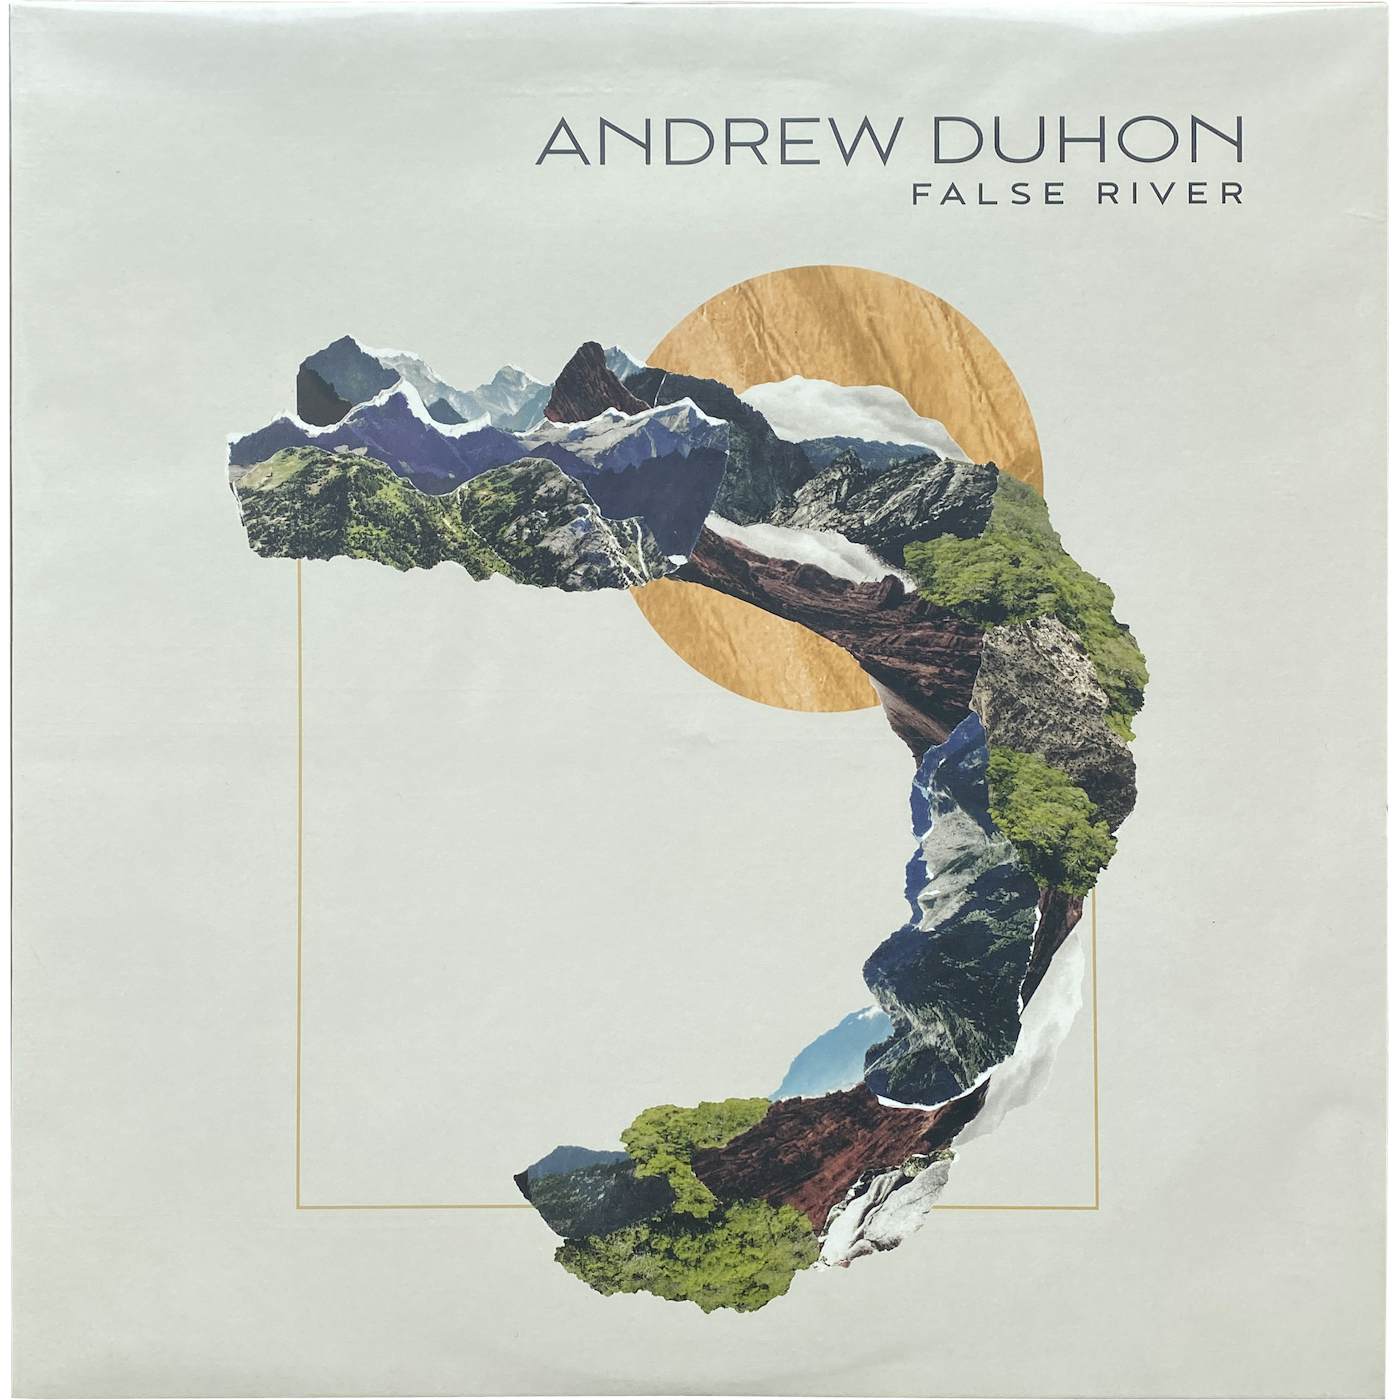 Andrew Duhon Vinyl Record - False River - SIGNED COPY